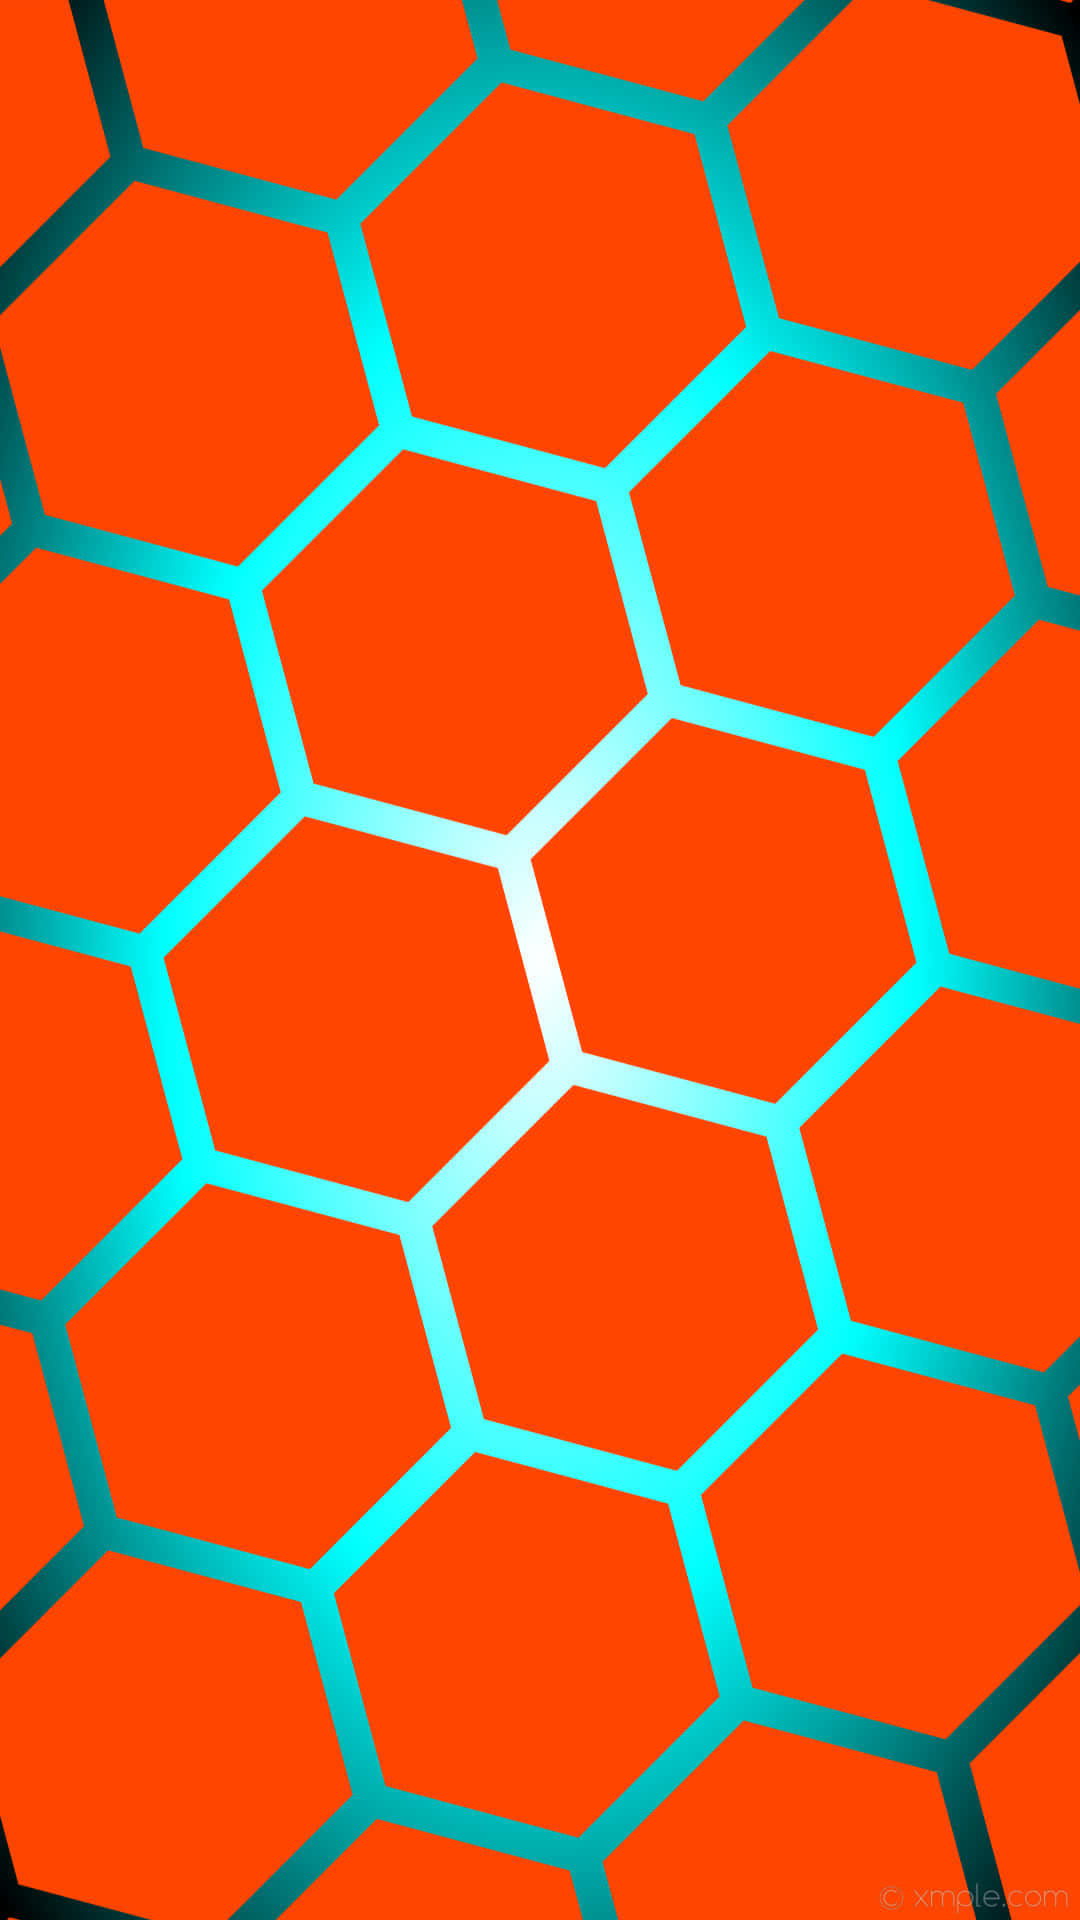 Enlevande Orange Och Blå Färgpalett Med Geometriska Former I En Modern Uppställning. Wallpaper